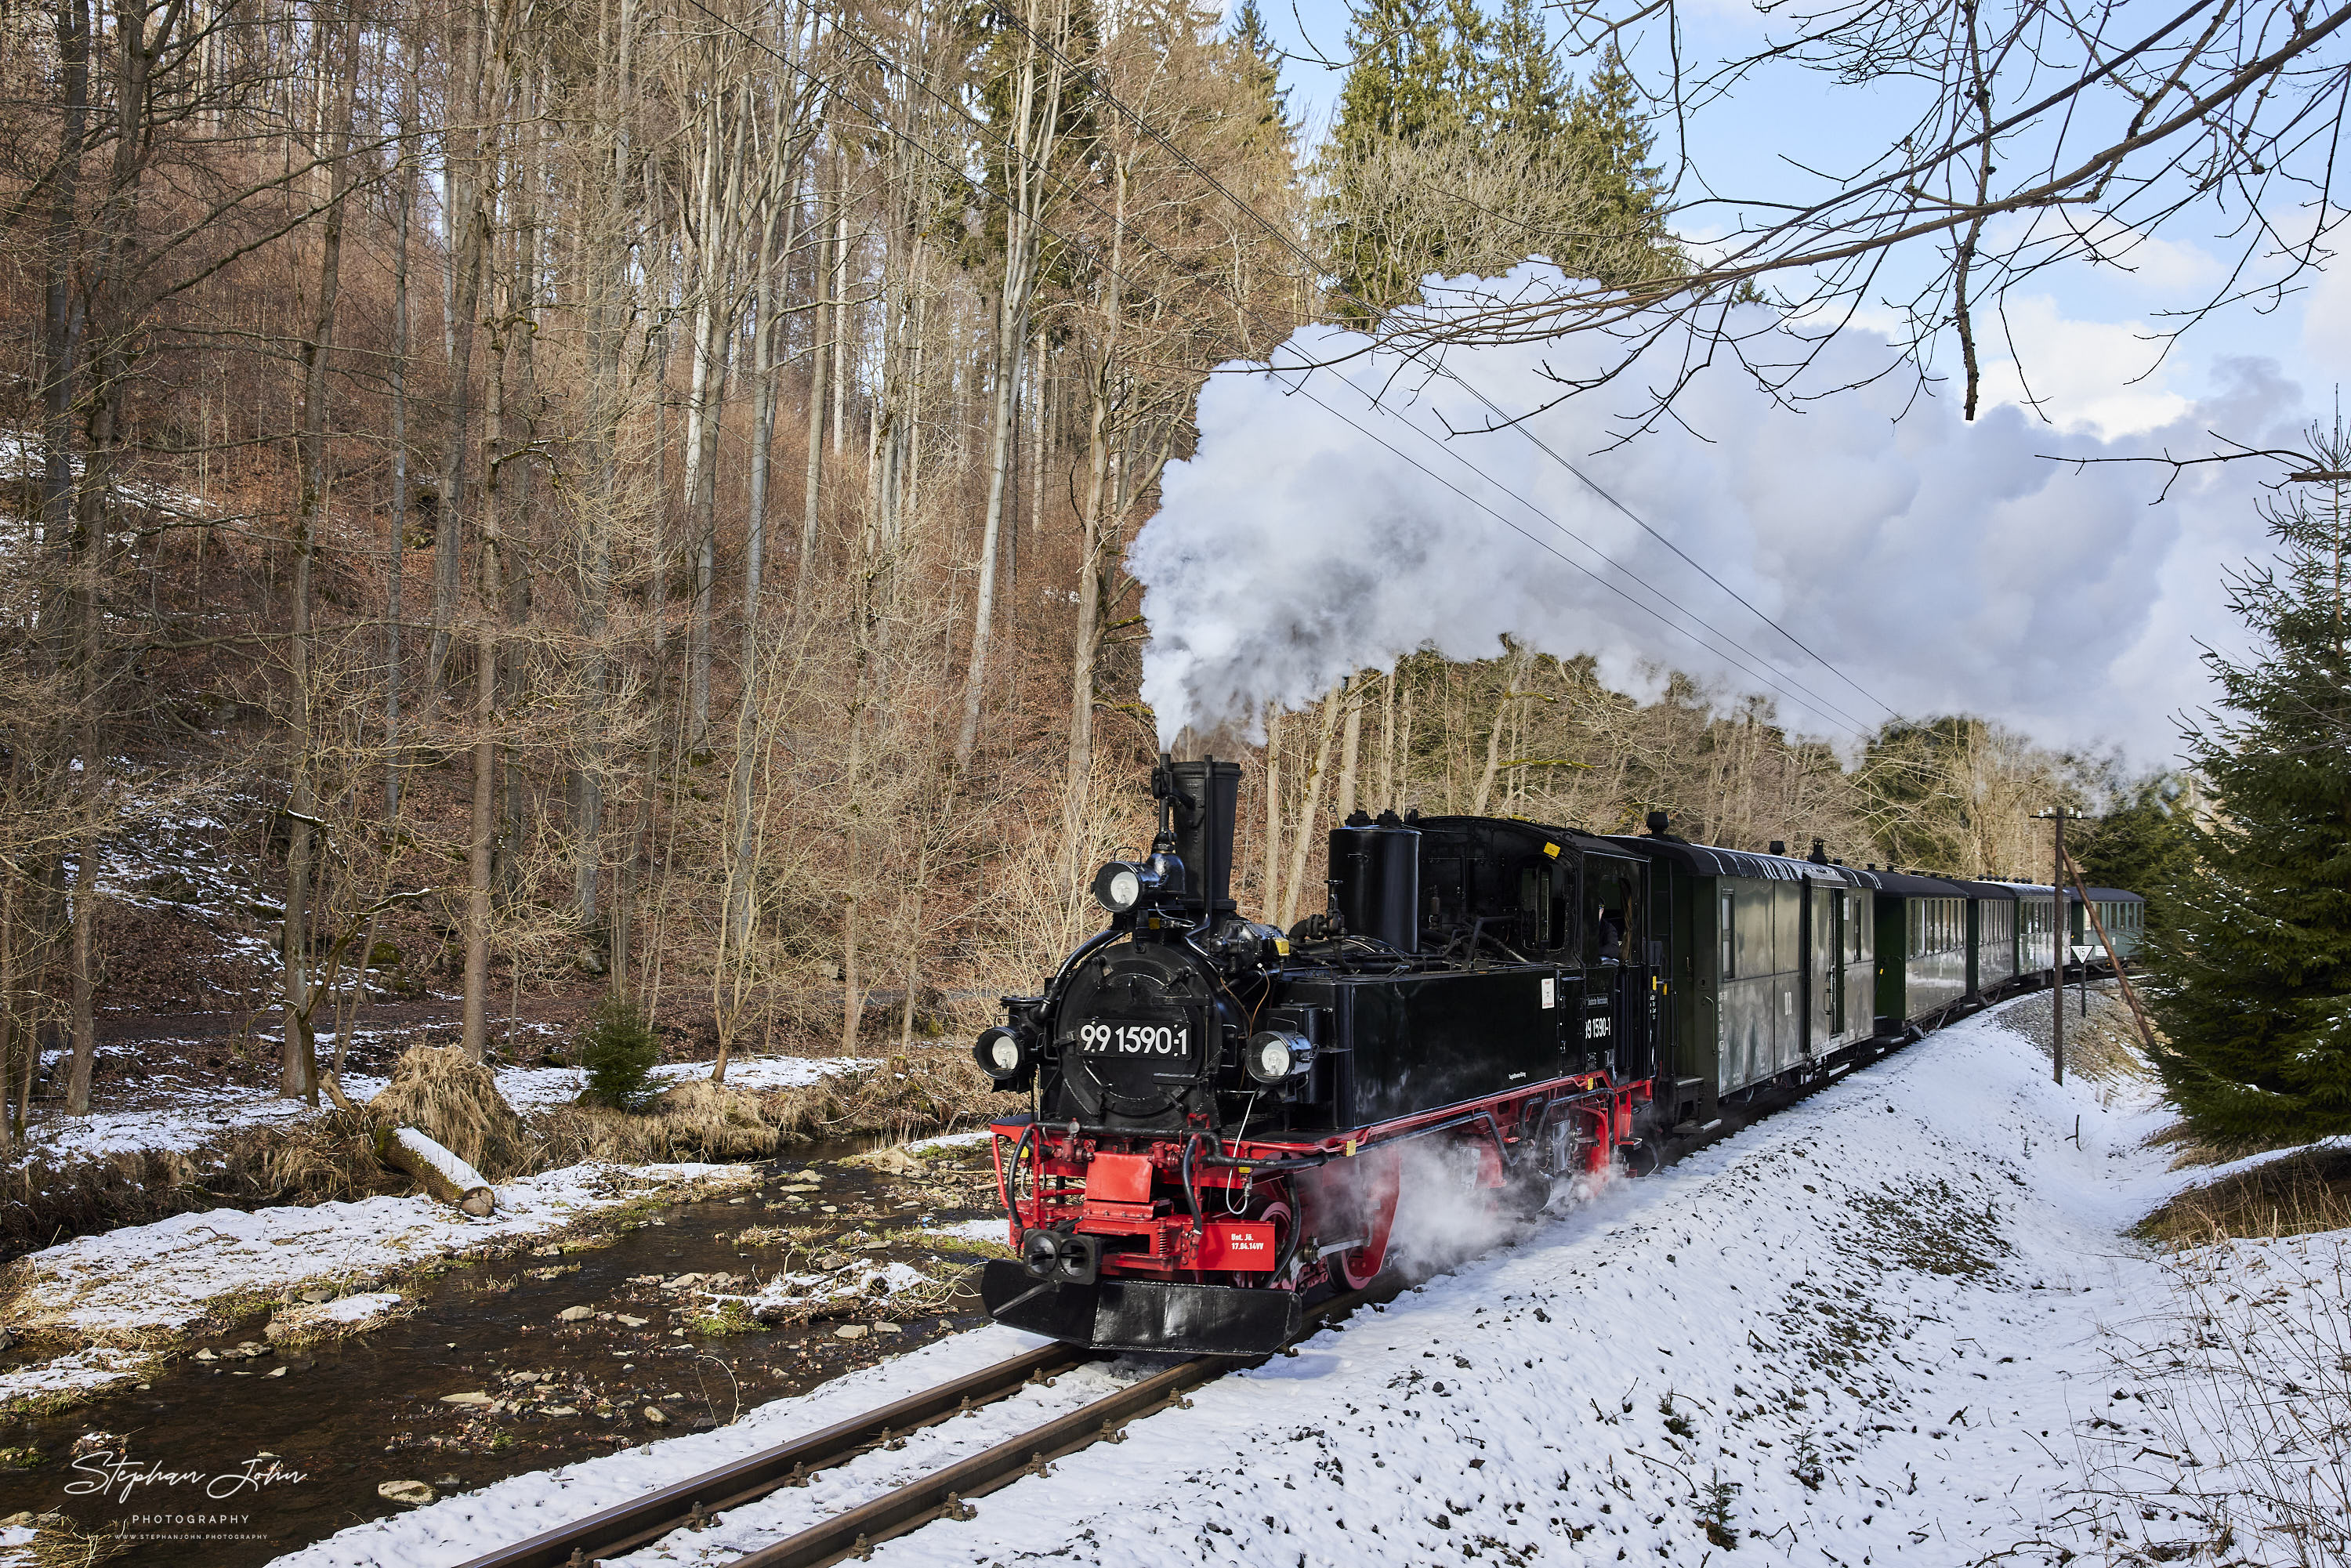 Zug 14113 mit Lok 99 1590-1 nach Jöhstadt zwischen Wildbach und Stolln